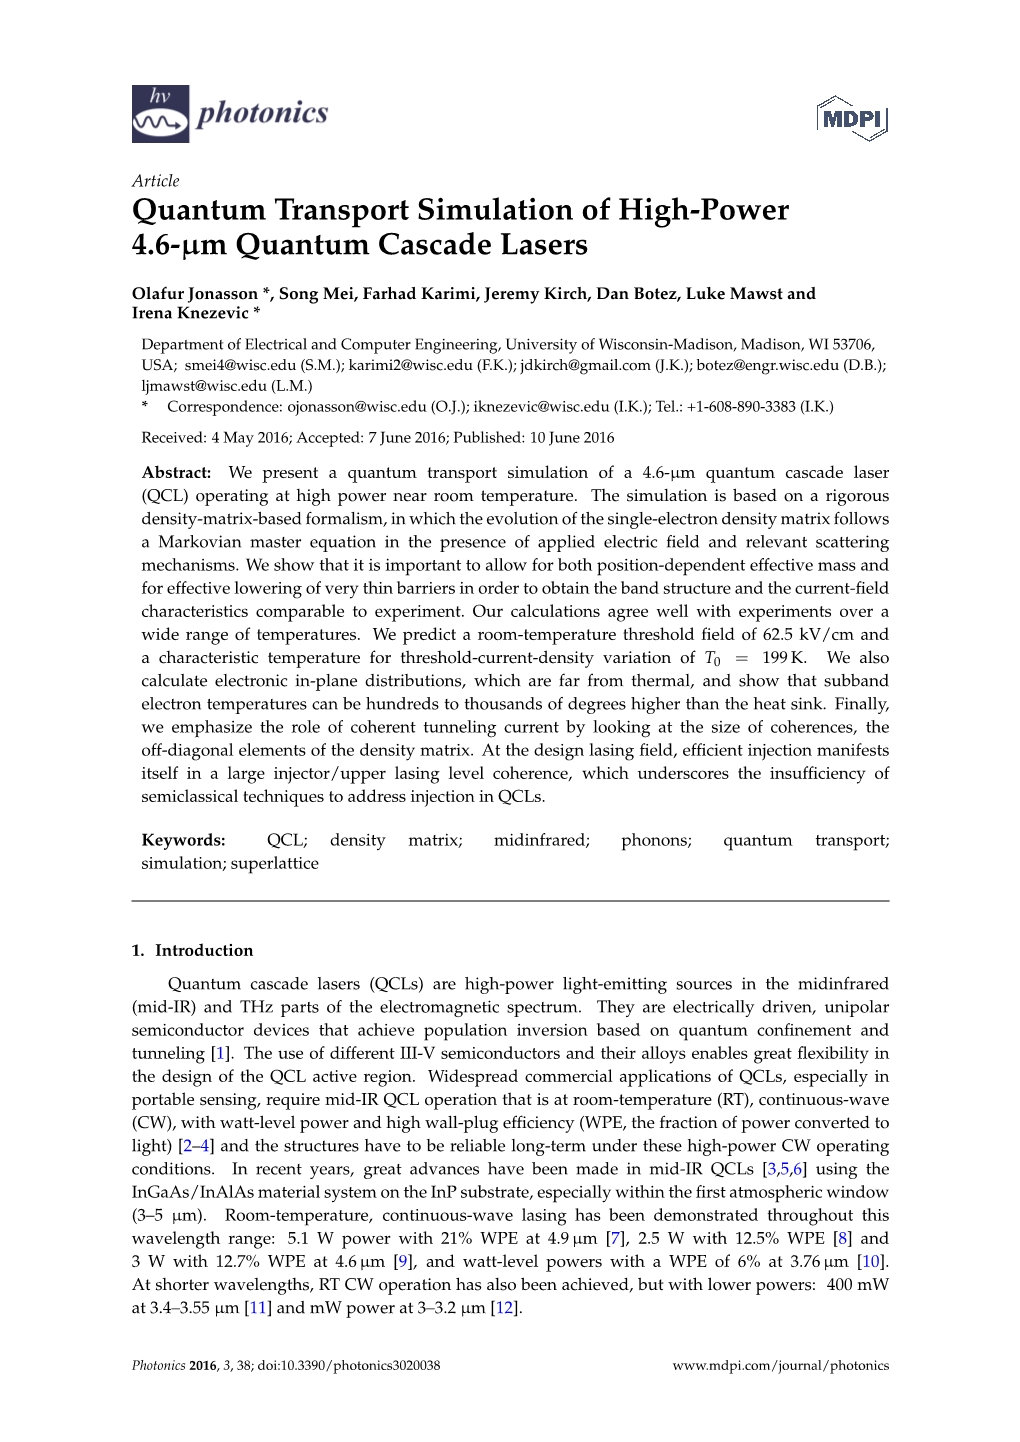 Quantum Transport Simulation of High-Power 4.6-Μm Quantum Cascade Lasers